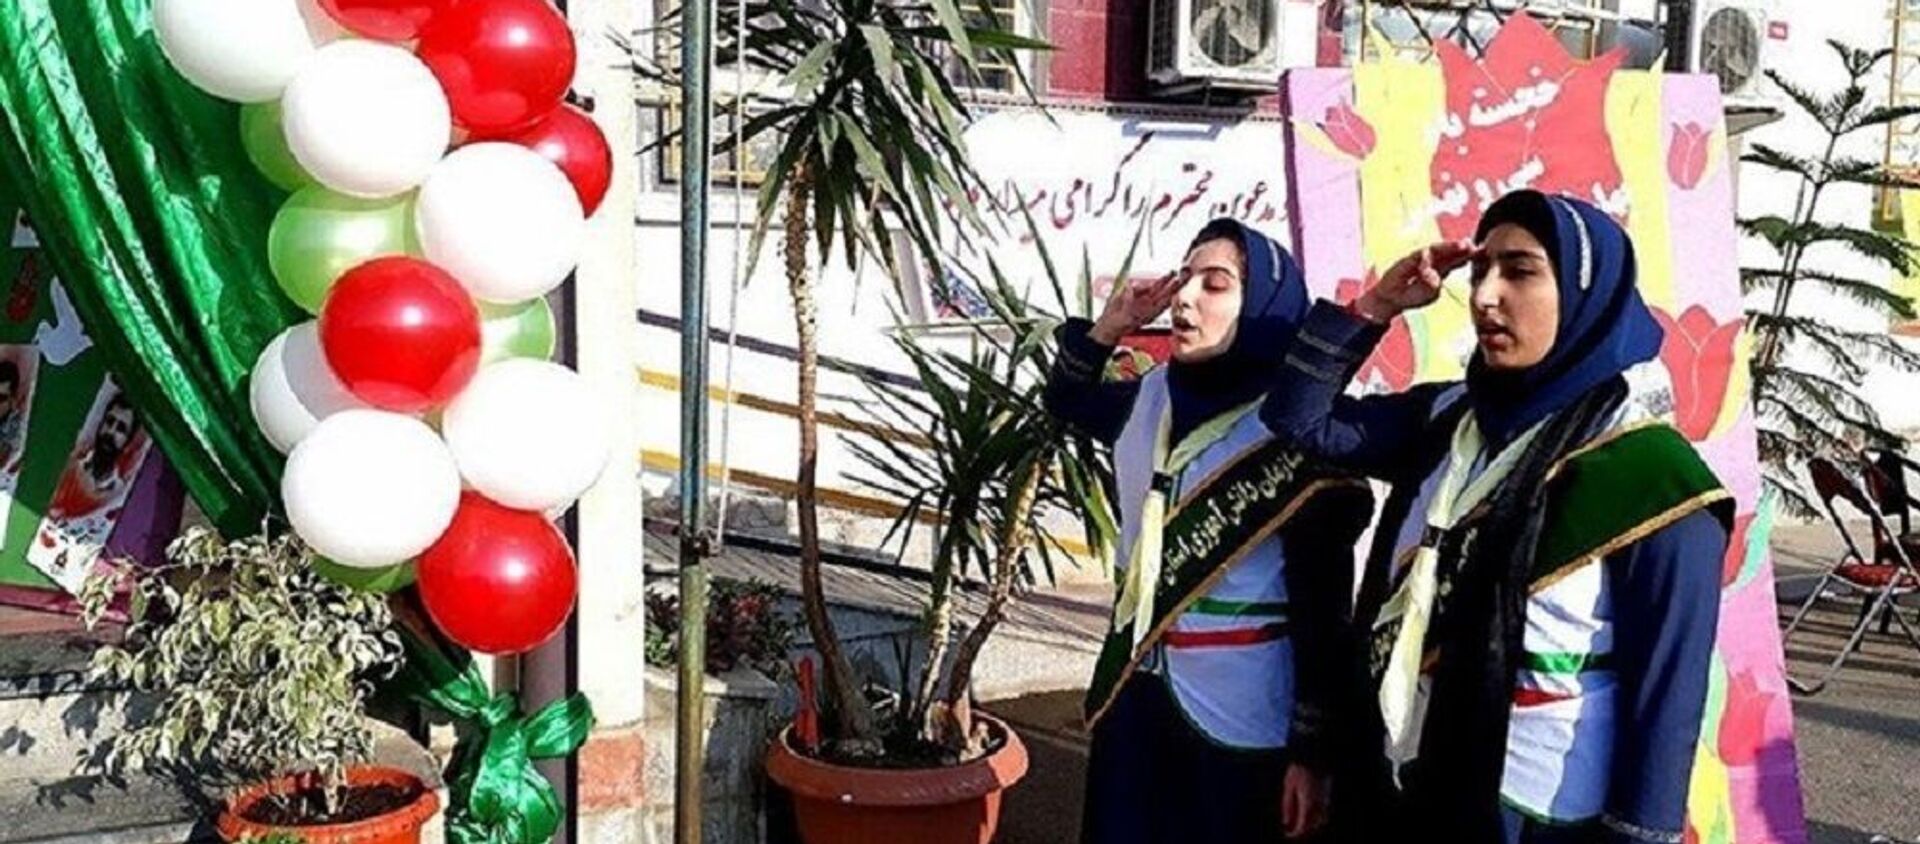 بنرهای عجیب شهرداری مشهد به مناسبت دهه فجر + عکس - اسپوتنیک ایران  , 1920, 31.01.2021